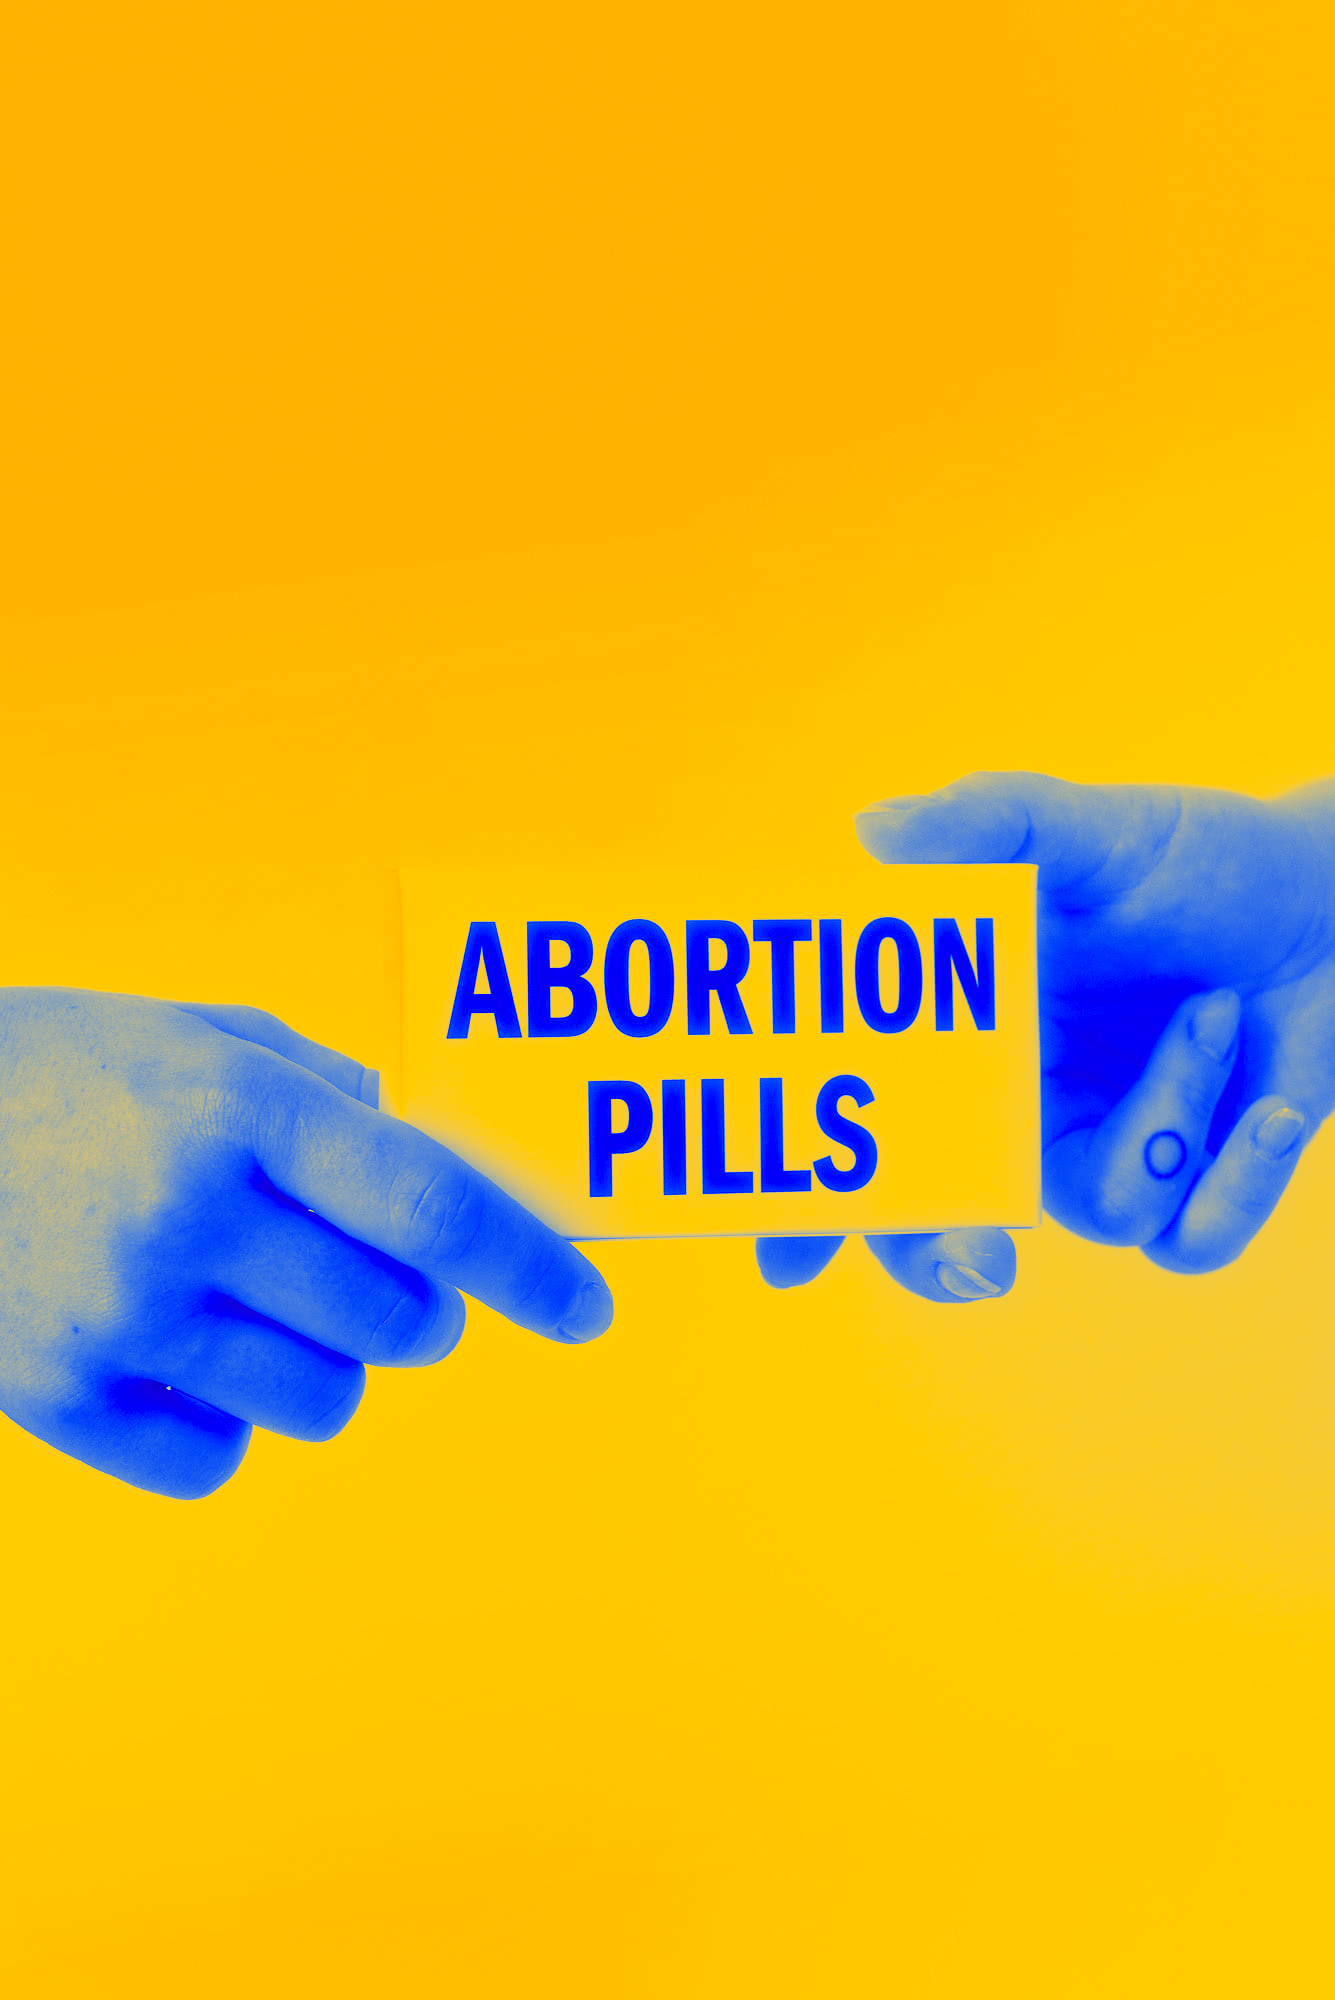 Zdjęcie w kolorach Ukraińskiej flagi - dłonie przekazują sobie pudełko z tabletkami aborcyjnymi.